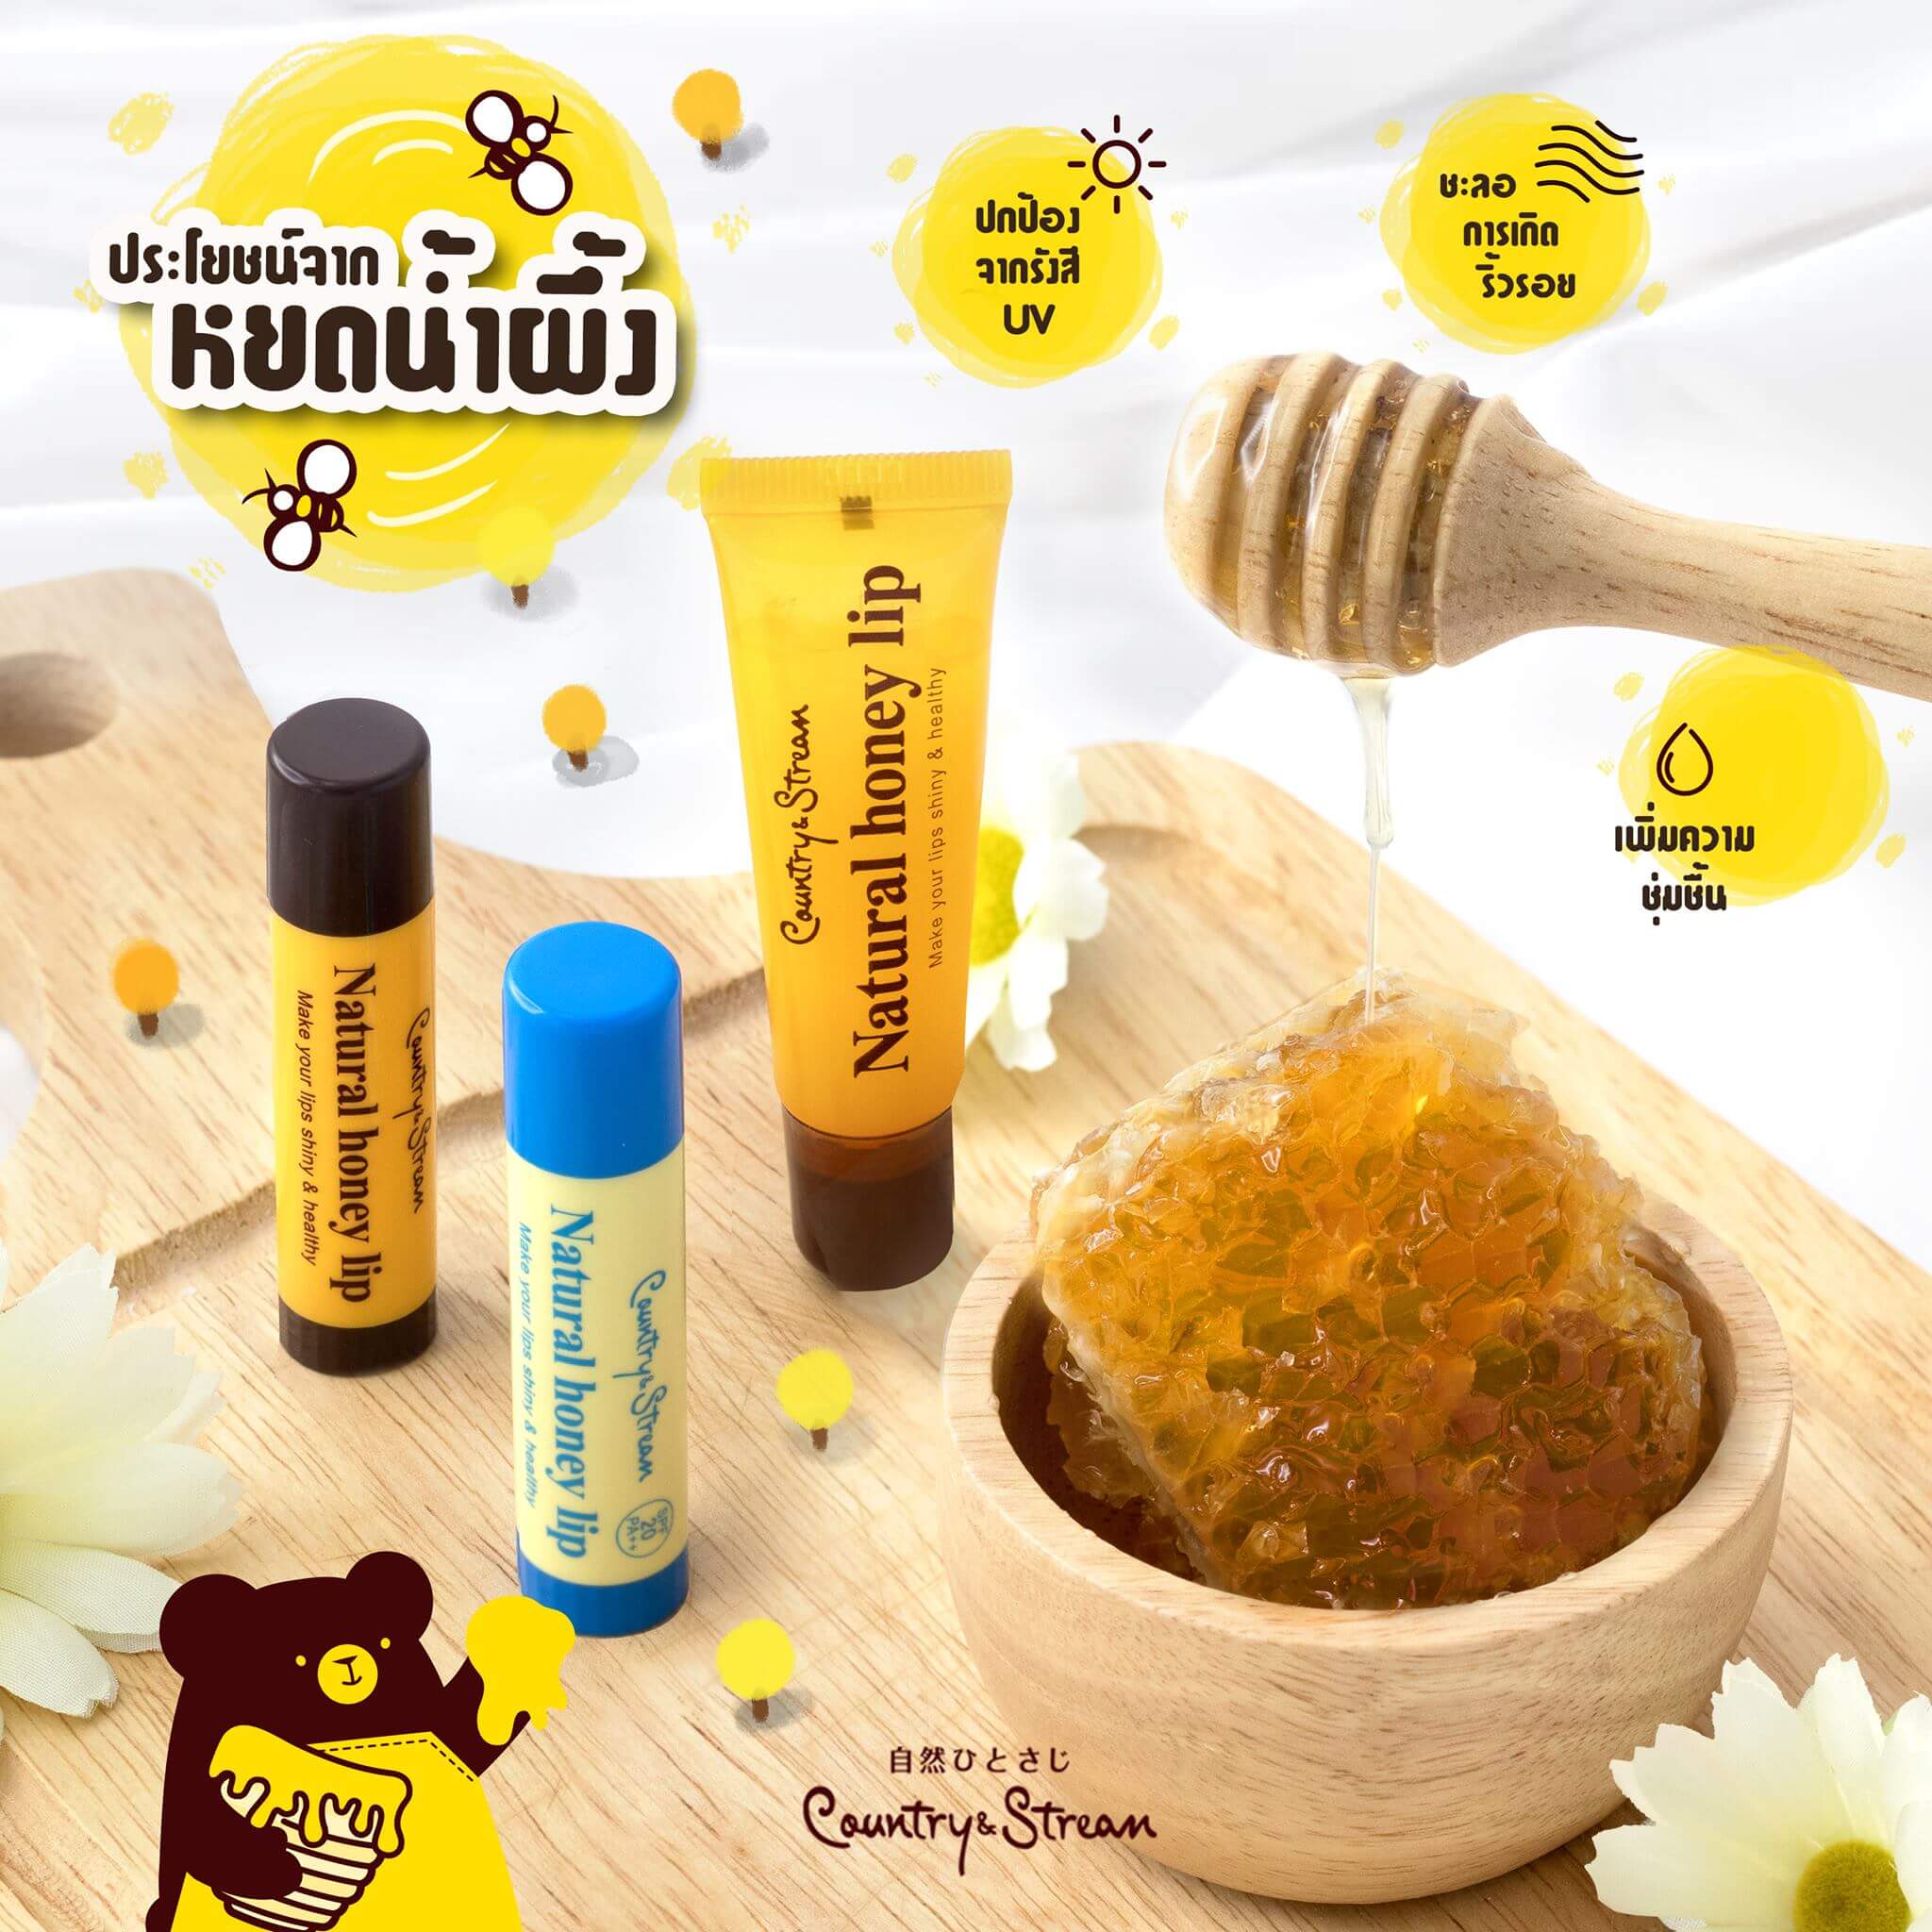 Country&Stream Natural Honey Lip HM 4.5 g ลิปแท่งบำรุงริมฝีปากด้วยคุณค่าจากน้ำผึ้ง และรอยัลเจลลี่ ริมฝีปากนุ่ม สุขภาพดีด้วยมอยเจอร์ไรเซอร์เข้มข้นจากน้ำผึ้ง เนื้อชุ่มชื่น แต่บางเบาไม่เหนียวเหนอะหนะ  ใช้ทาริมฝีปากก่อนลงสีลิปสติก เพื่อความติดทนนานมากยิ่งขึ้น หอมกลิ่นน้ำผึ้งจากธรรมชาติ